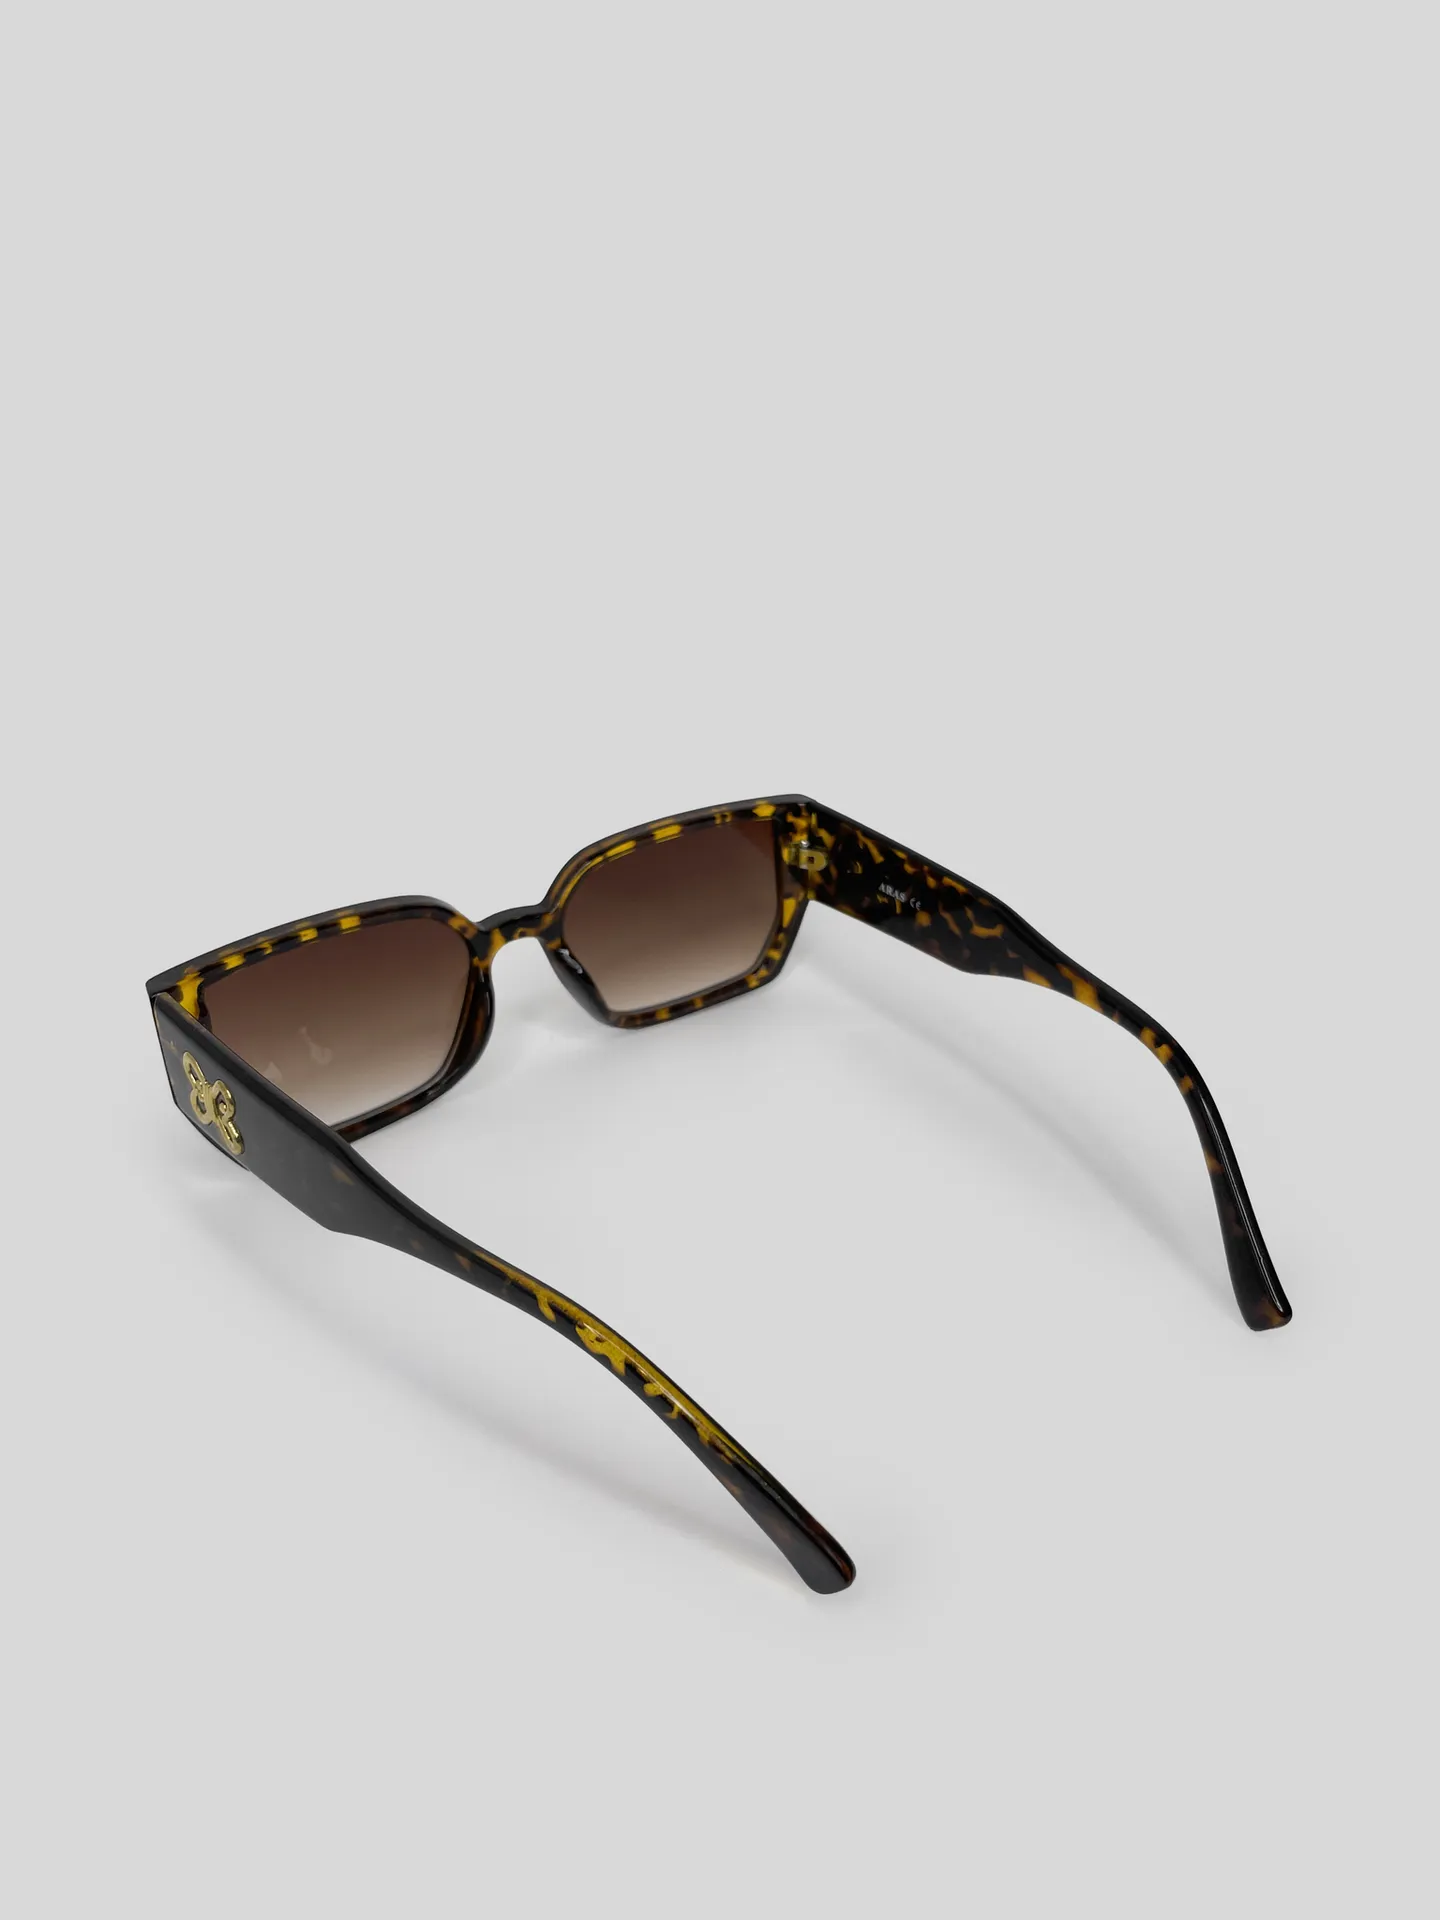 Солнцезащитные очки Aras 8114 с широкими дужками недорого